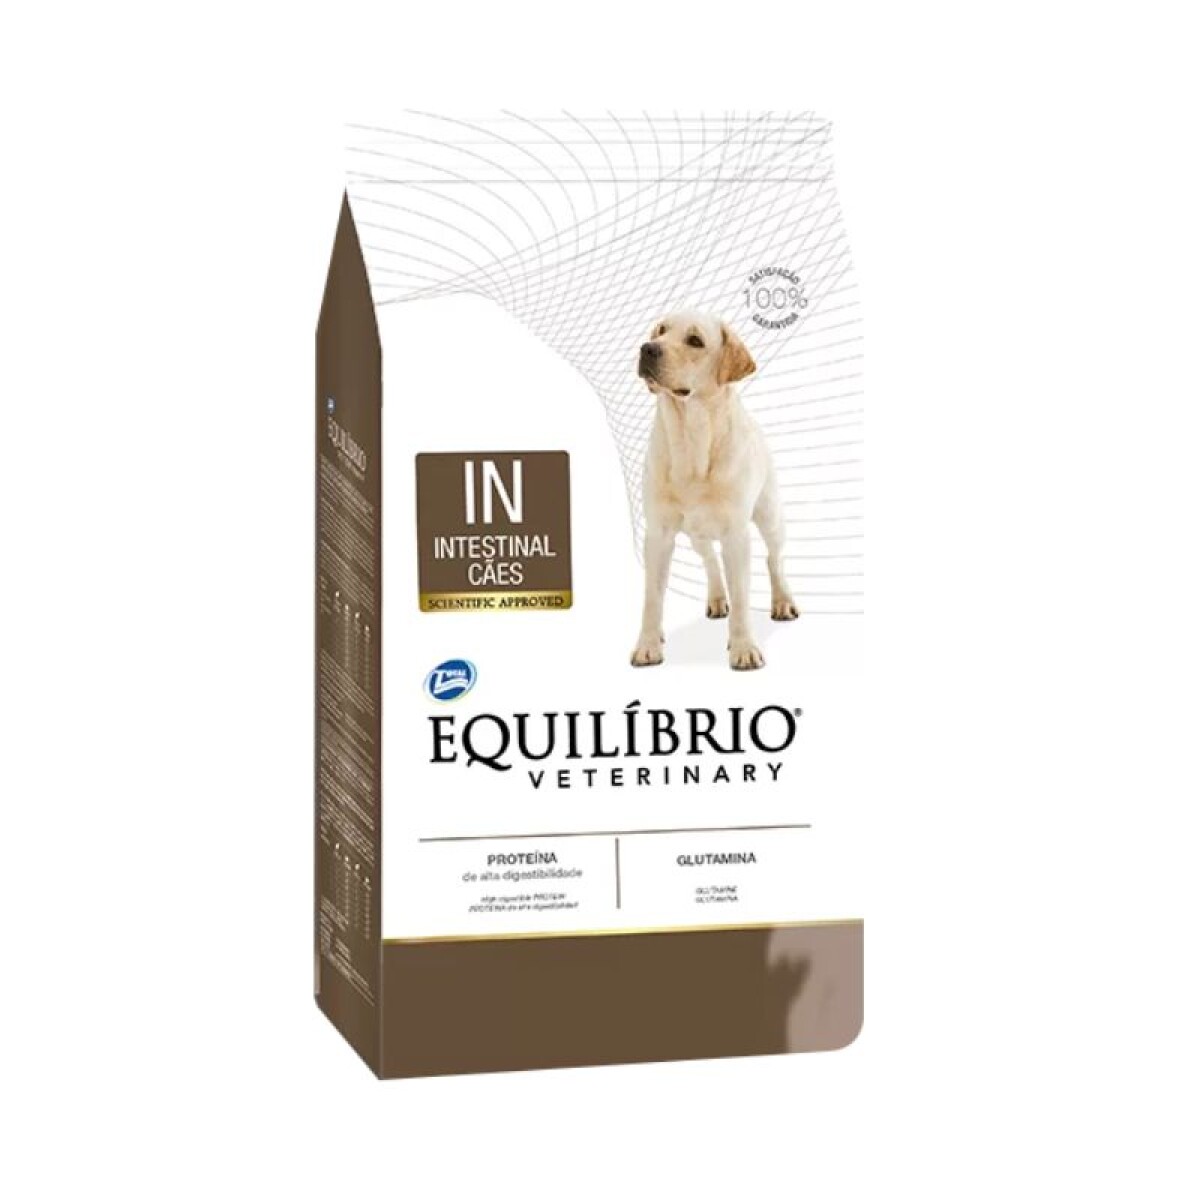 EQUILIBRIO INTESTINAL DOG 2KG - Equilibrio Intestinal Dog 2kg 